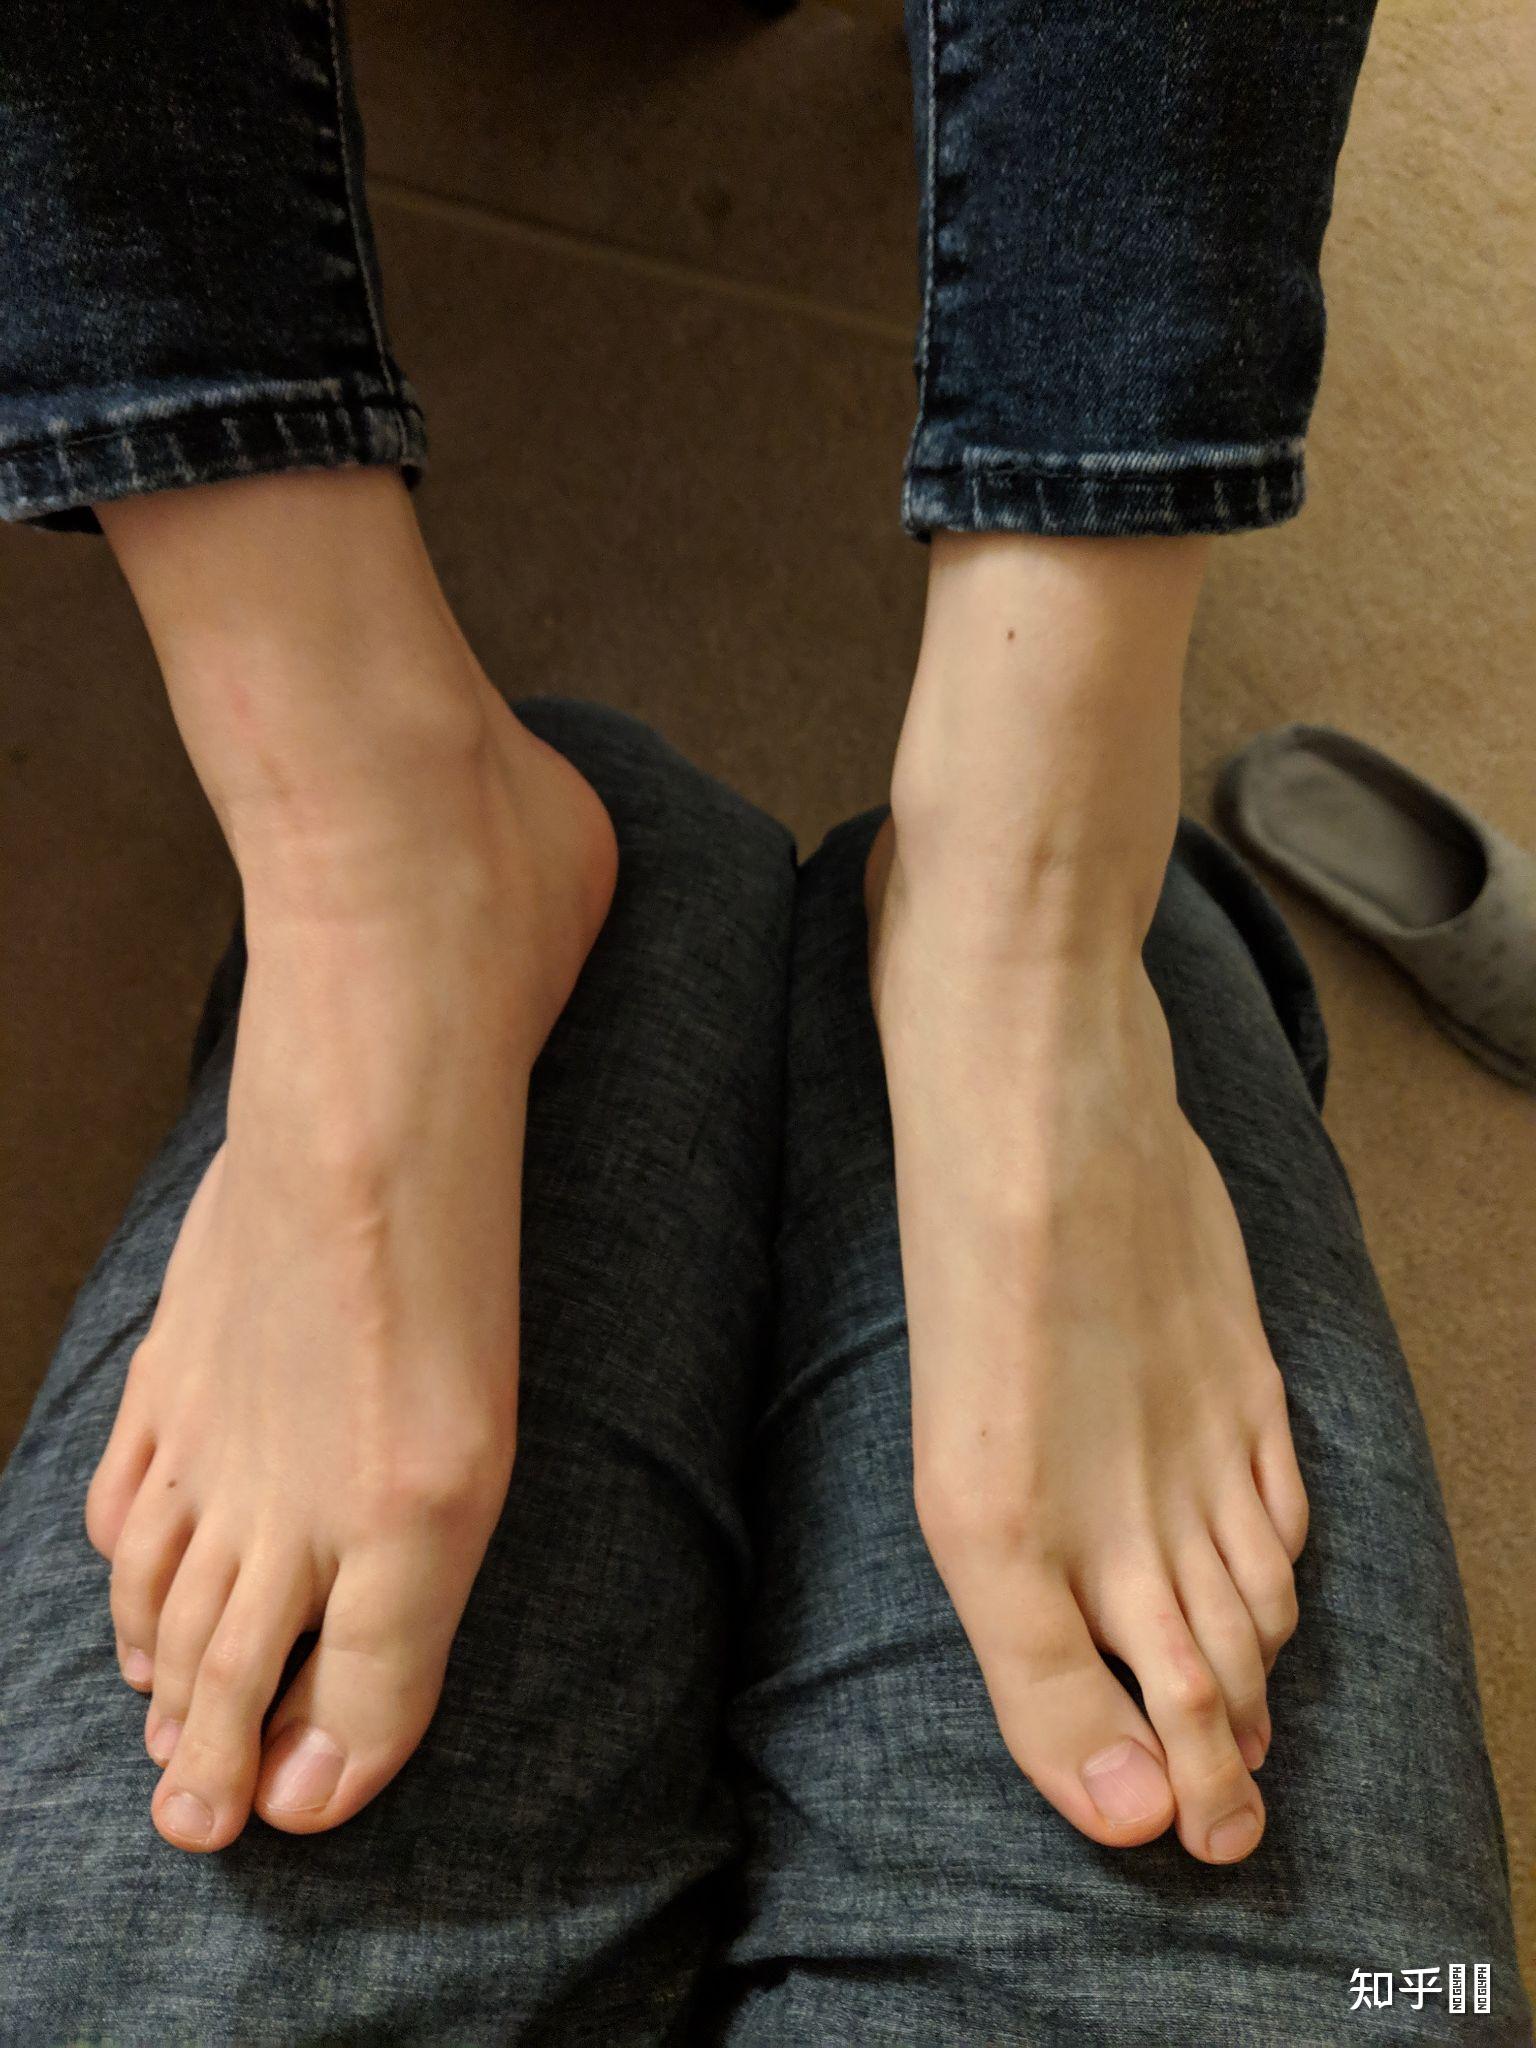 女孩子的脚趾很长是一种什么样的体验? 